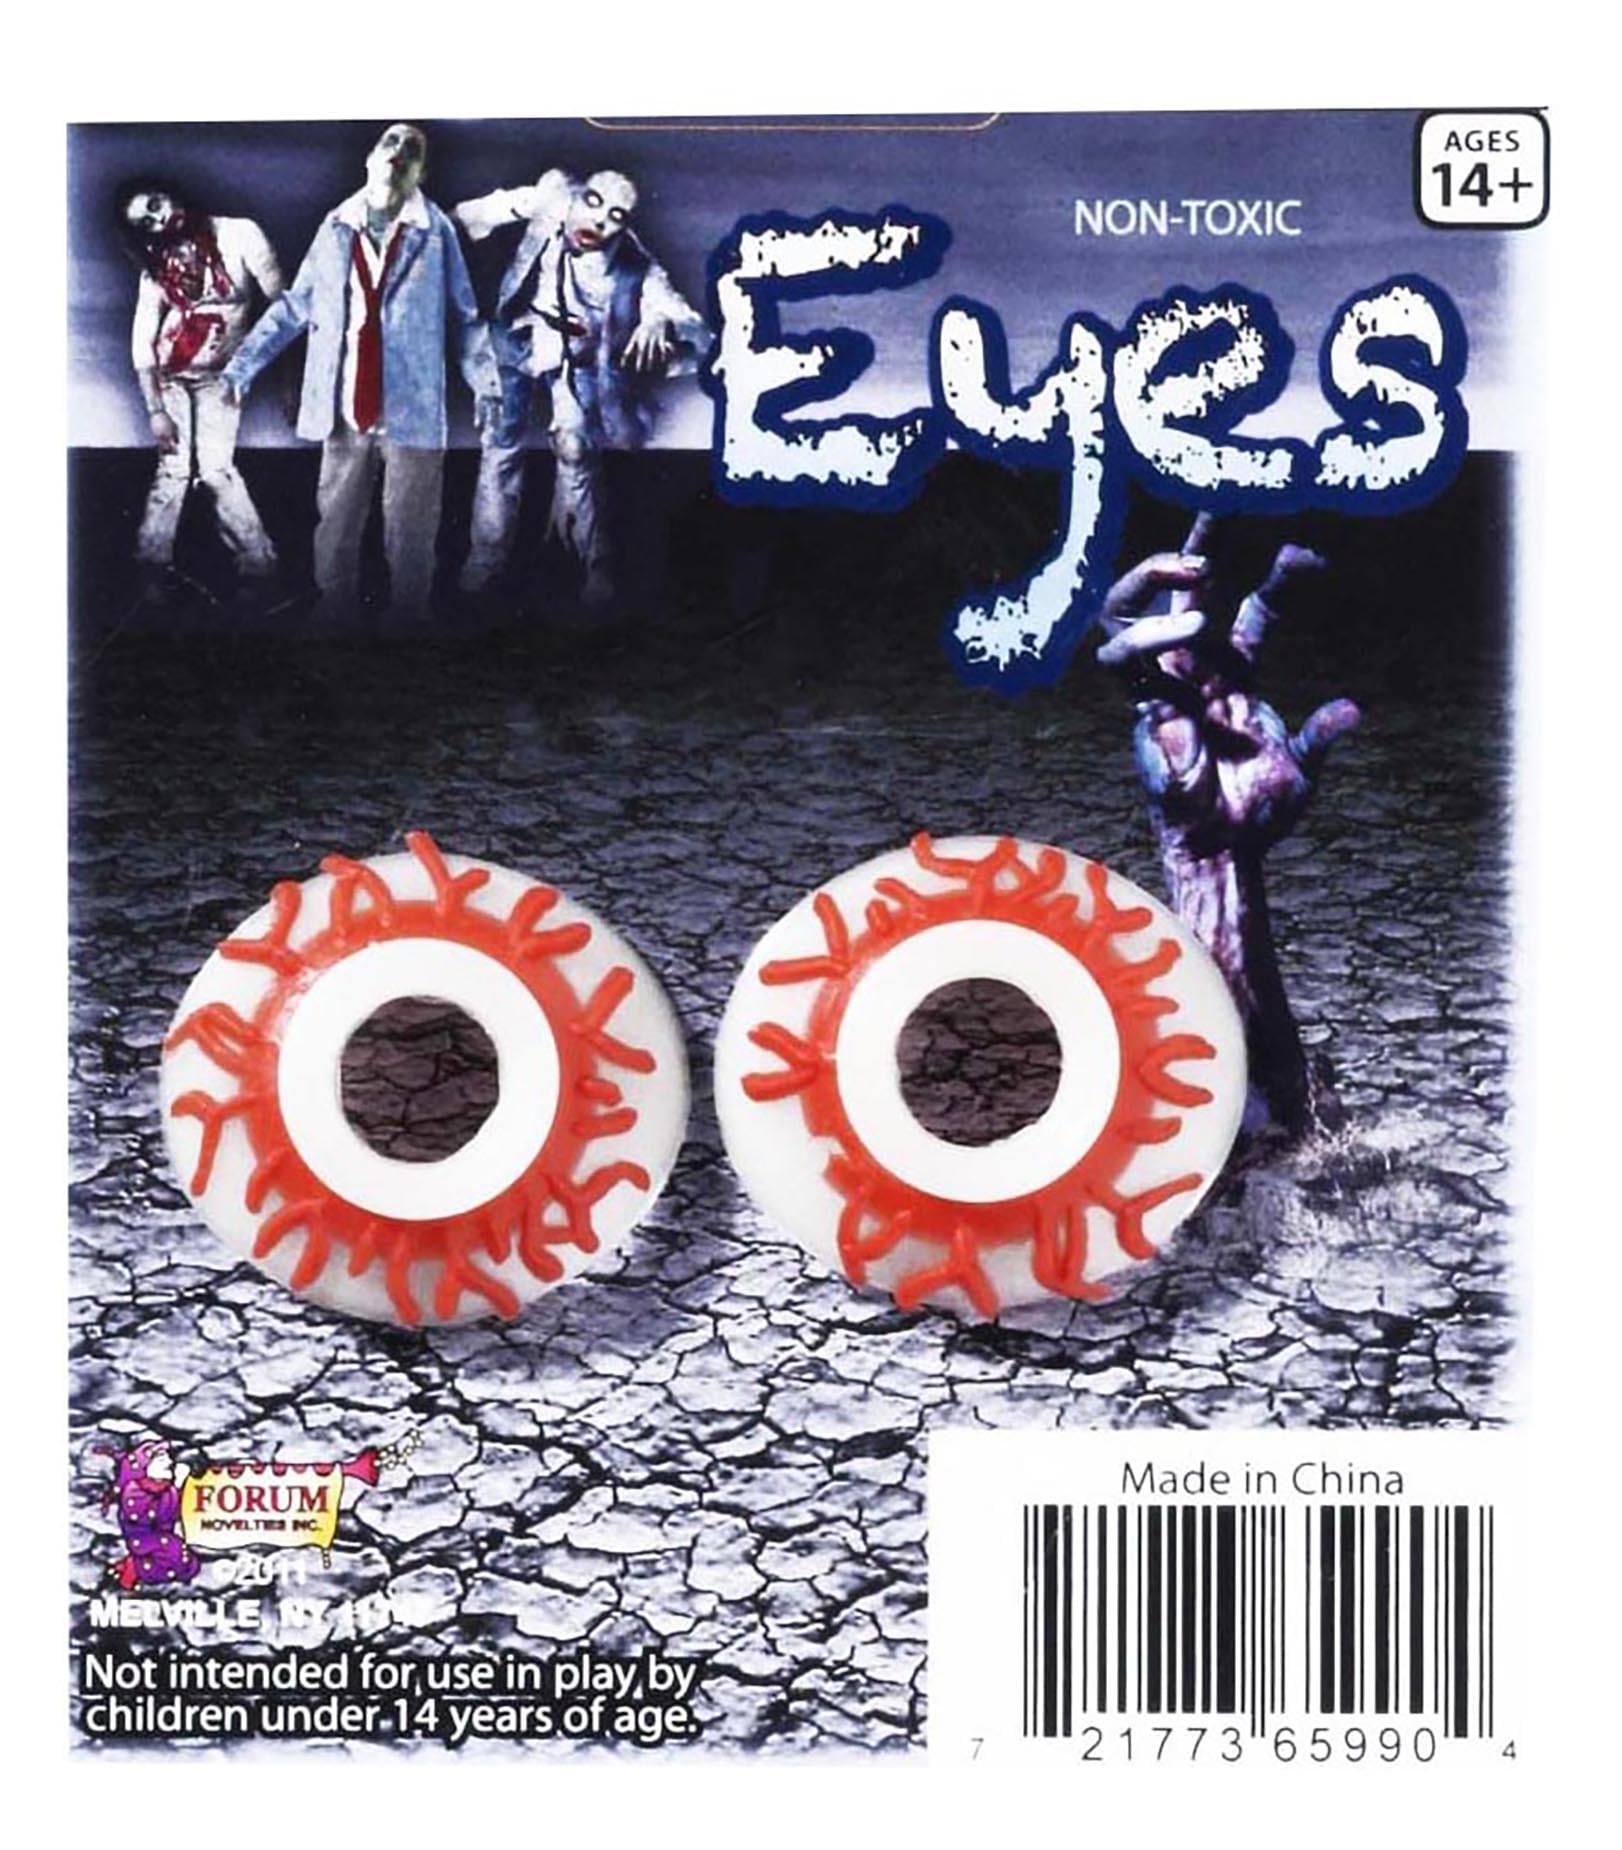 Zombie Eyes Costume Eyewear Accessory